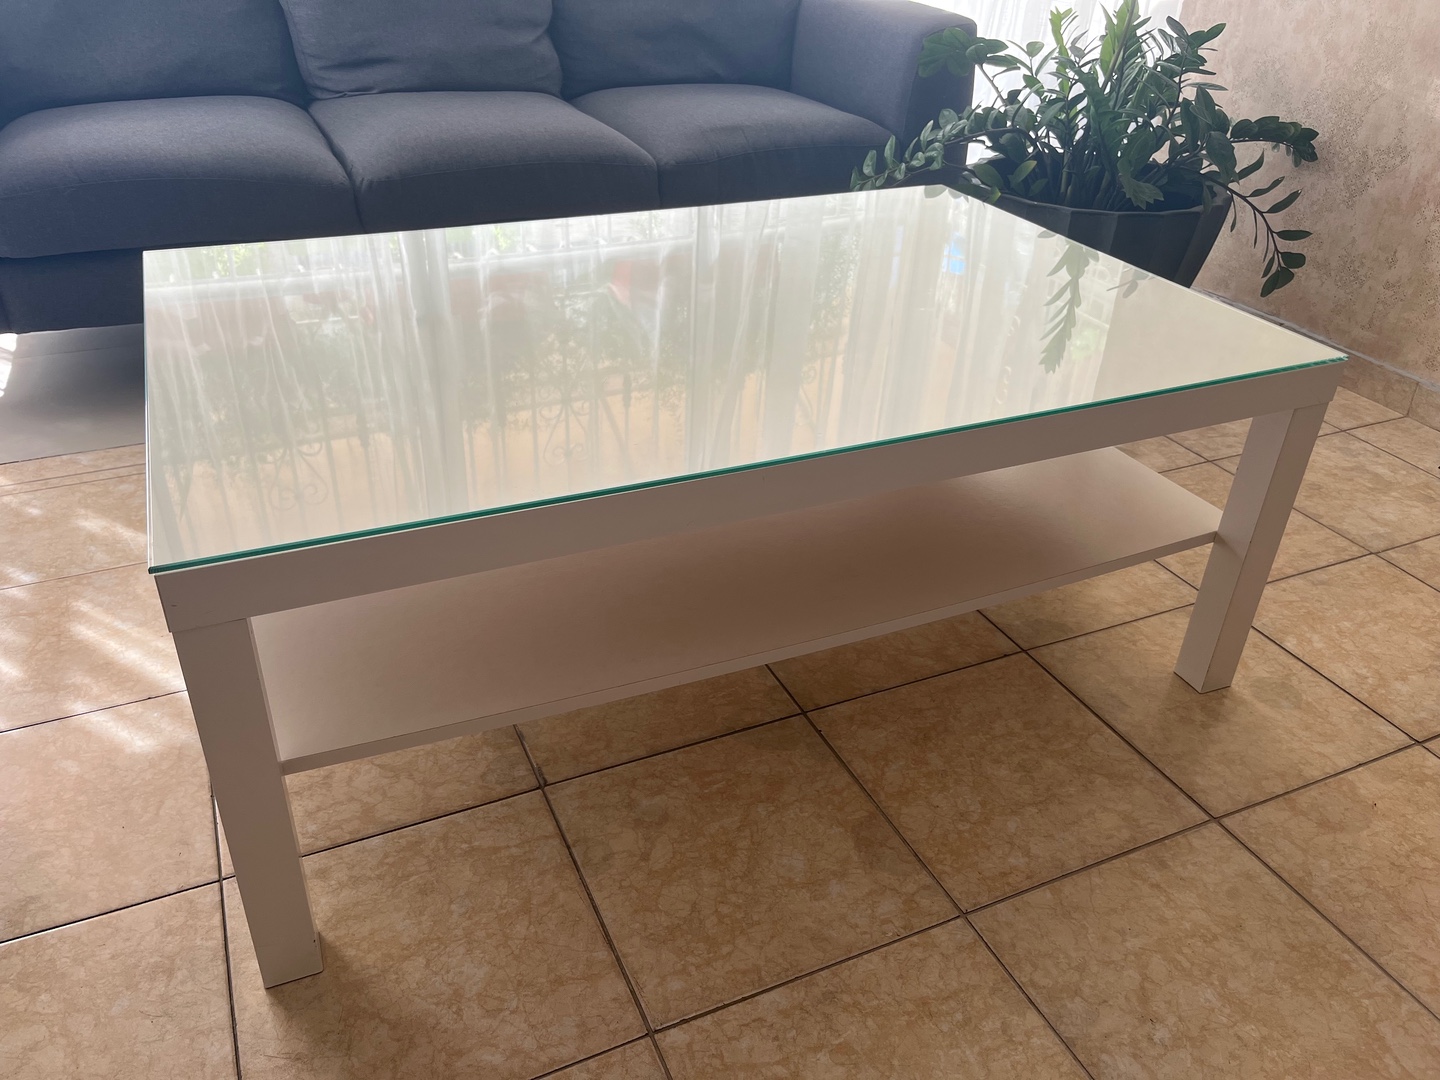 muebles y colchones - Vendo mesa centro de sala con tope cristal 0